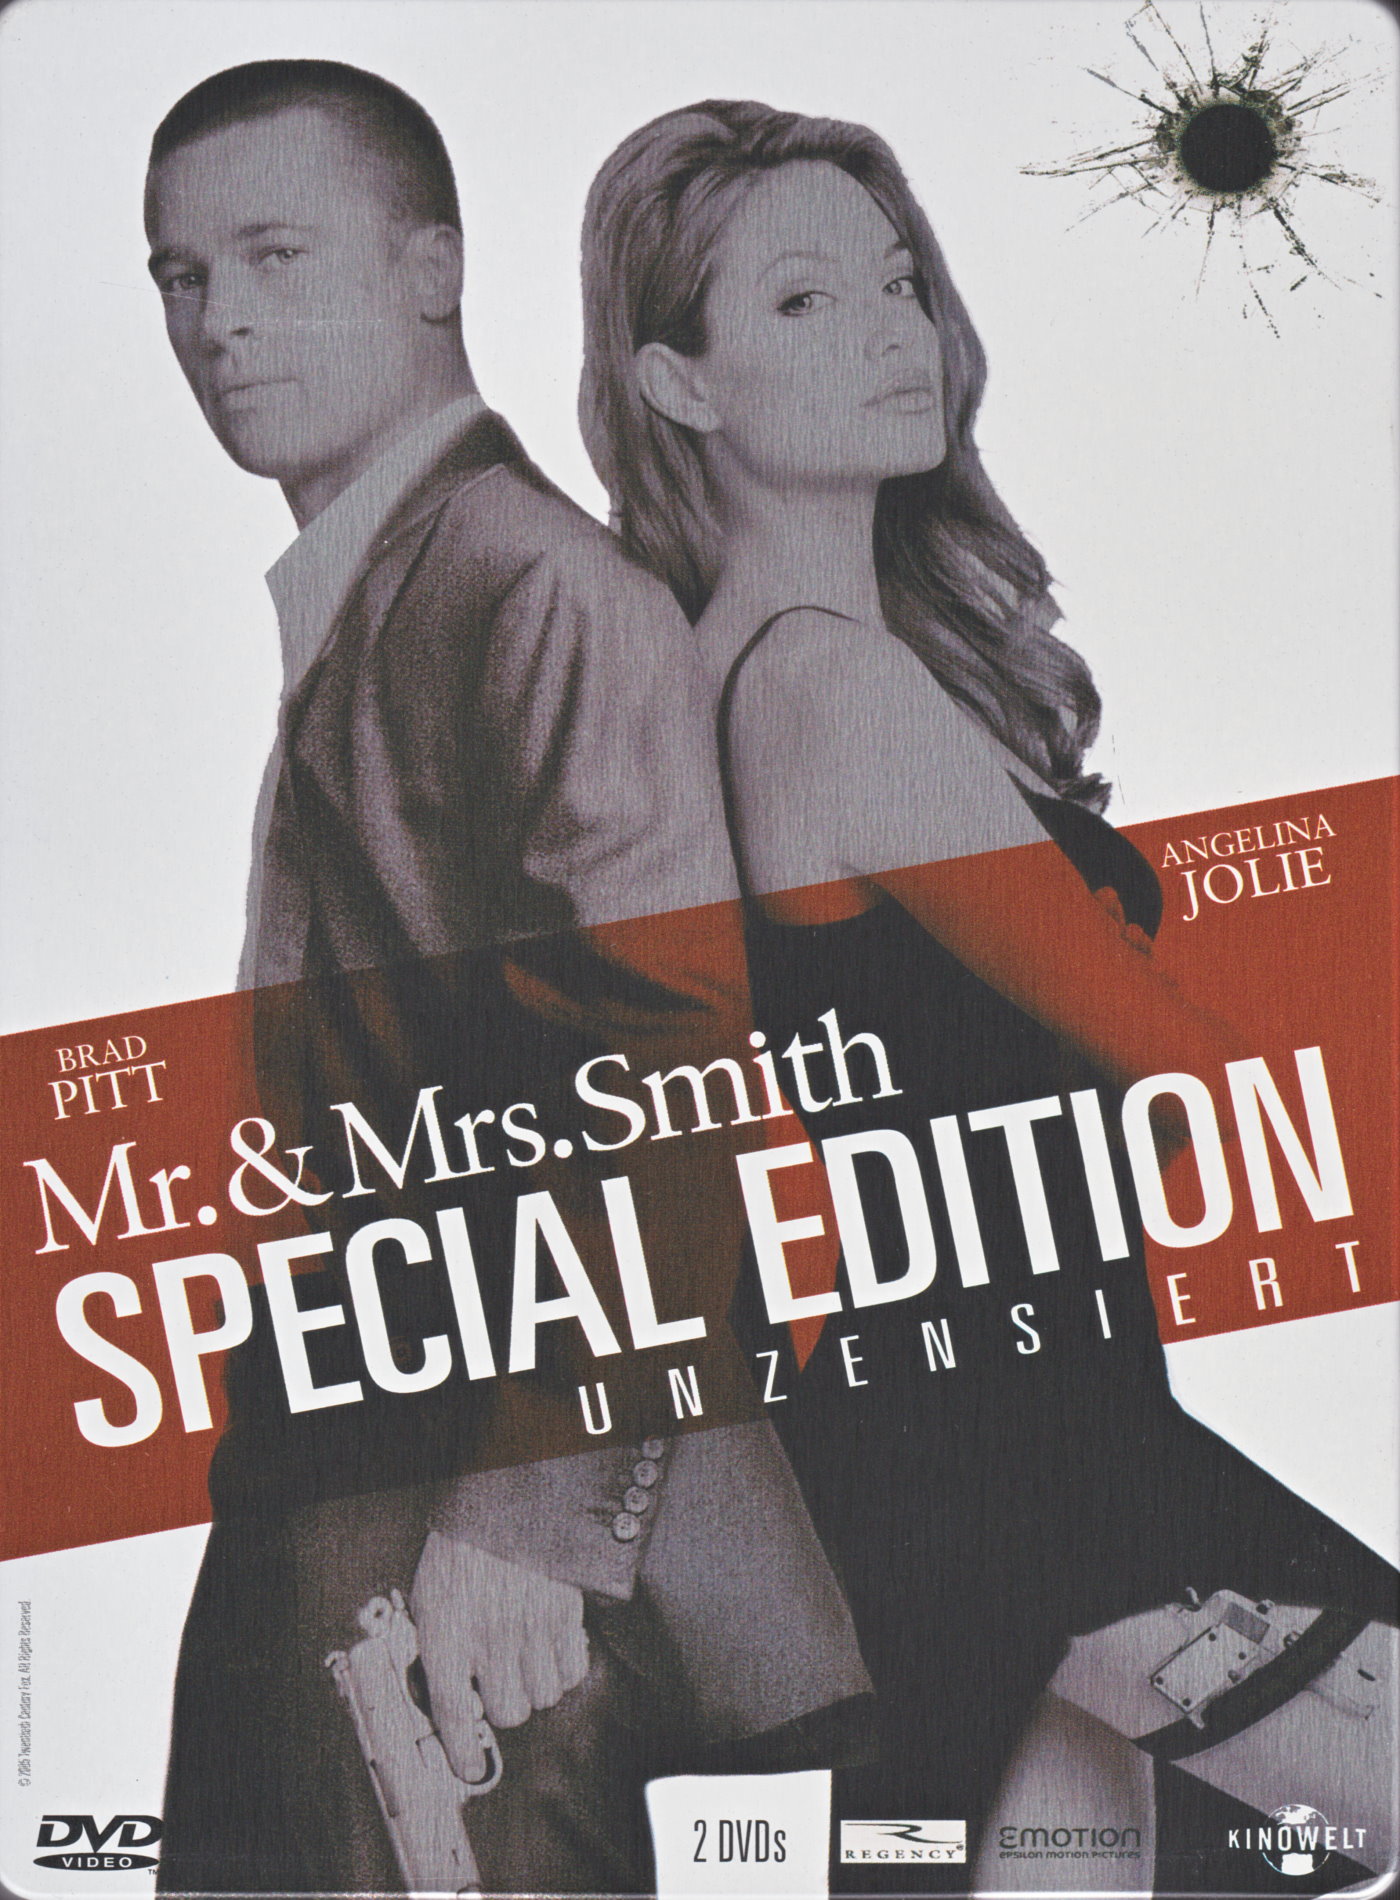 Cover - Mr. & Mrs. Smith.jpg